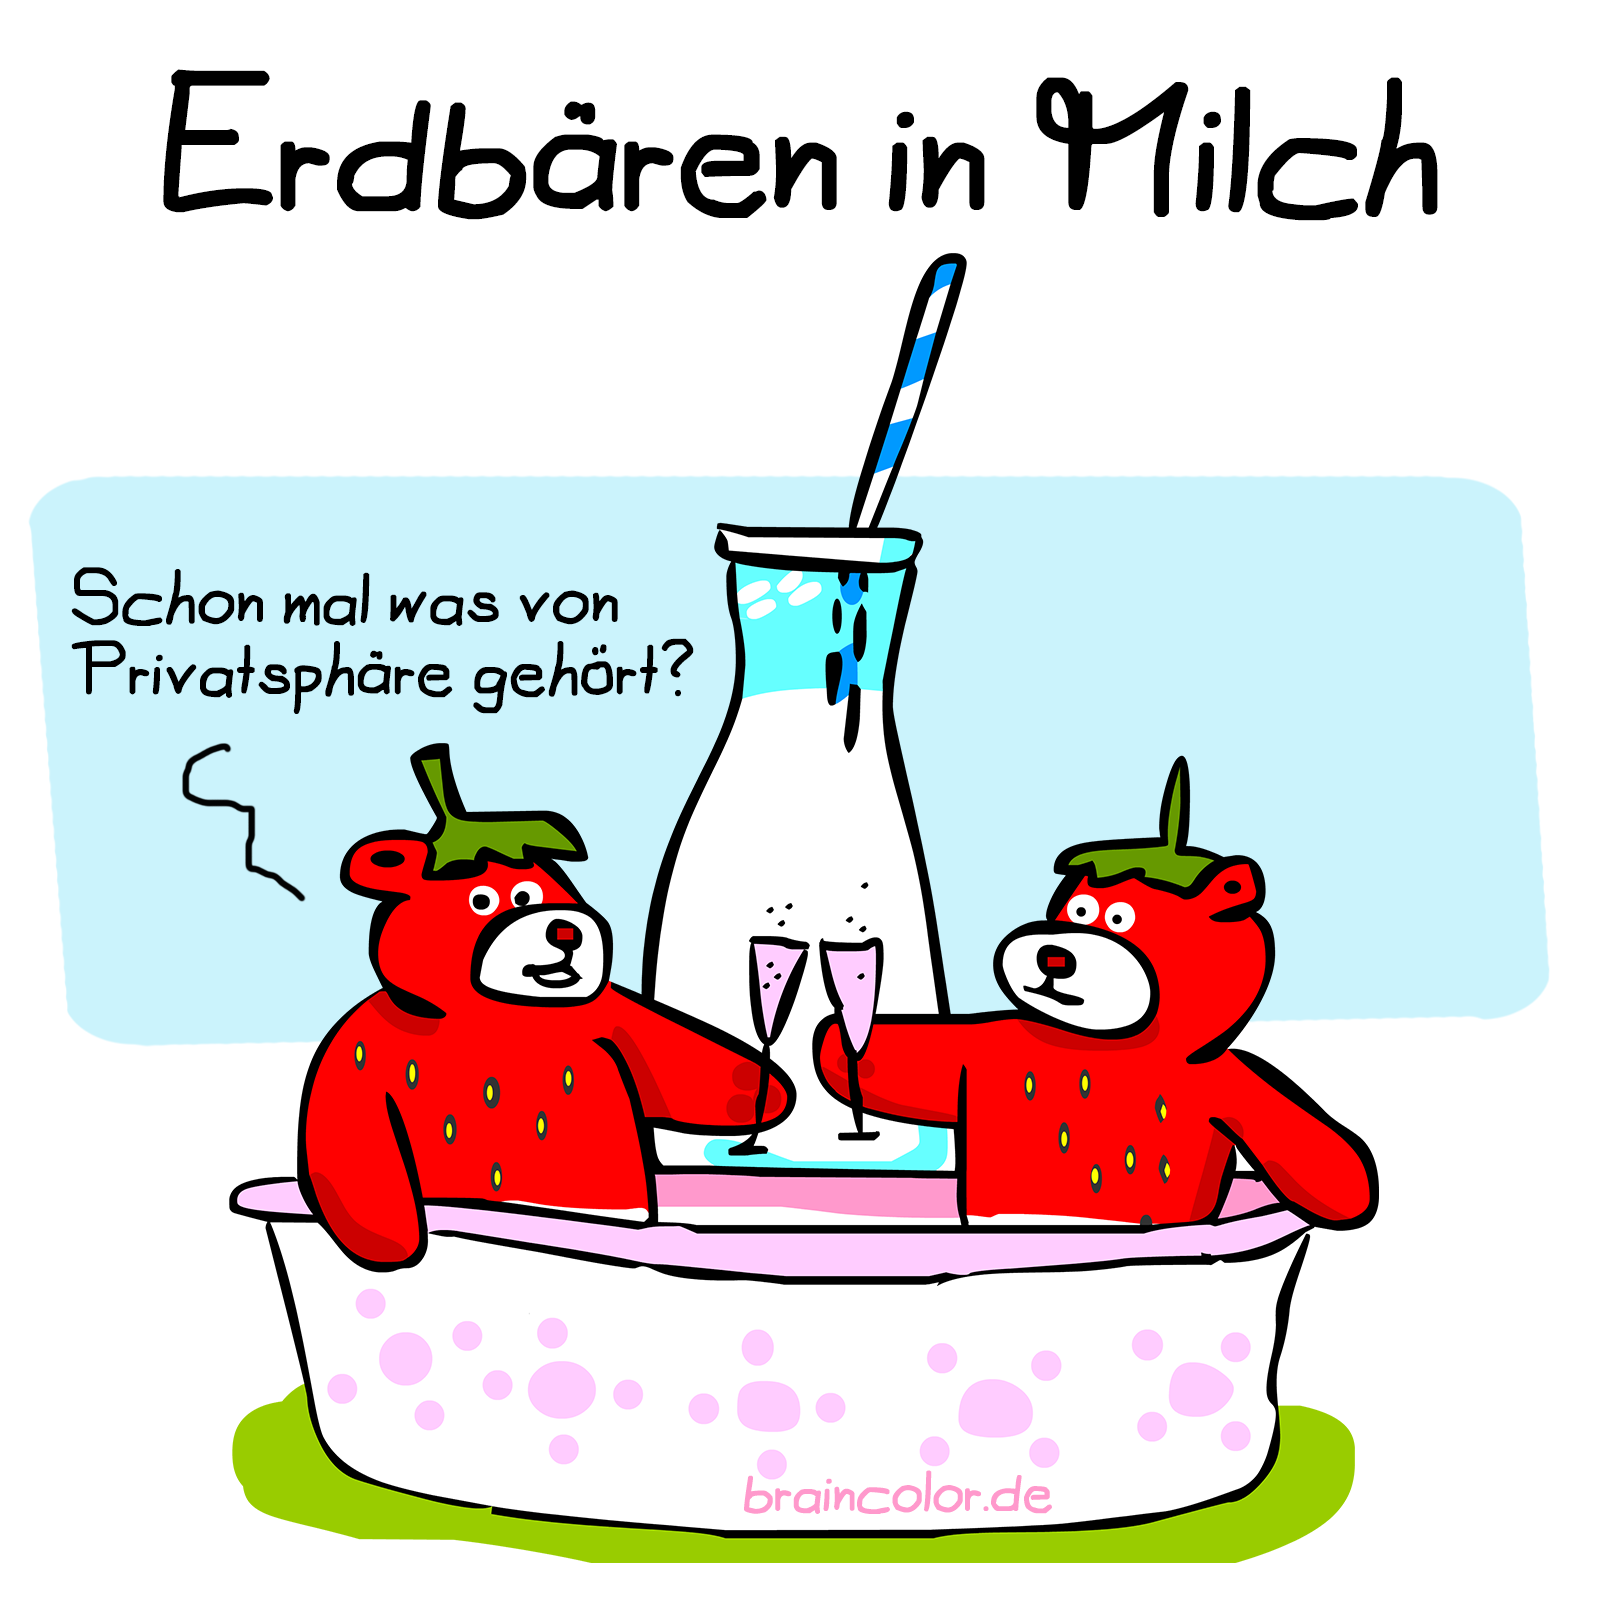 erdbeeren-milch